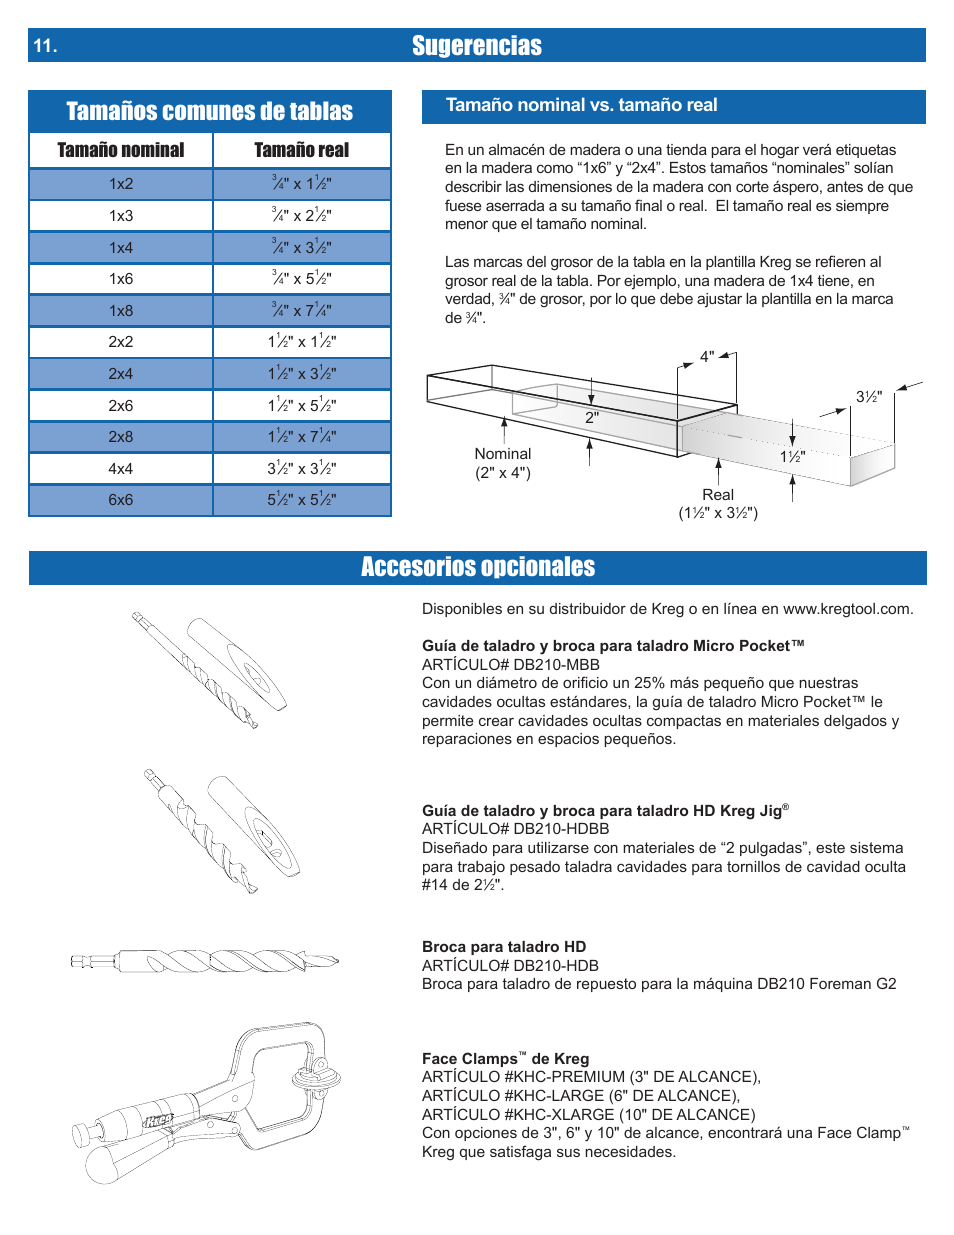 Sugerencias, Accesorios opcionales, Tamaños comunes de tablas | Tamaño nominal tamaño real, Tamaño nominal vs. tamaño real | Kreg DB210 Foreman Pocket-Hole Machine User Manual | Page 42 / 44